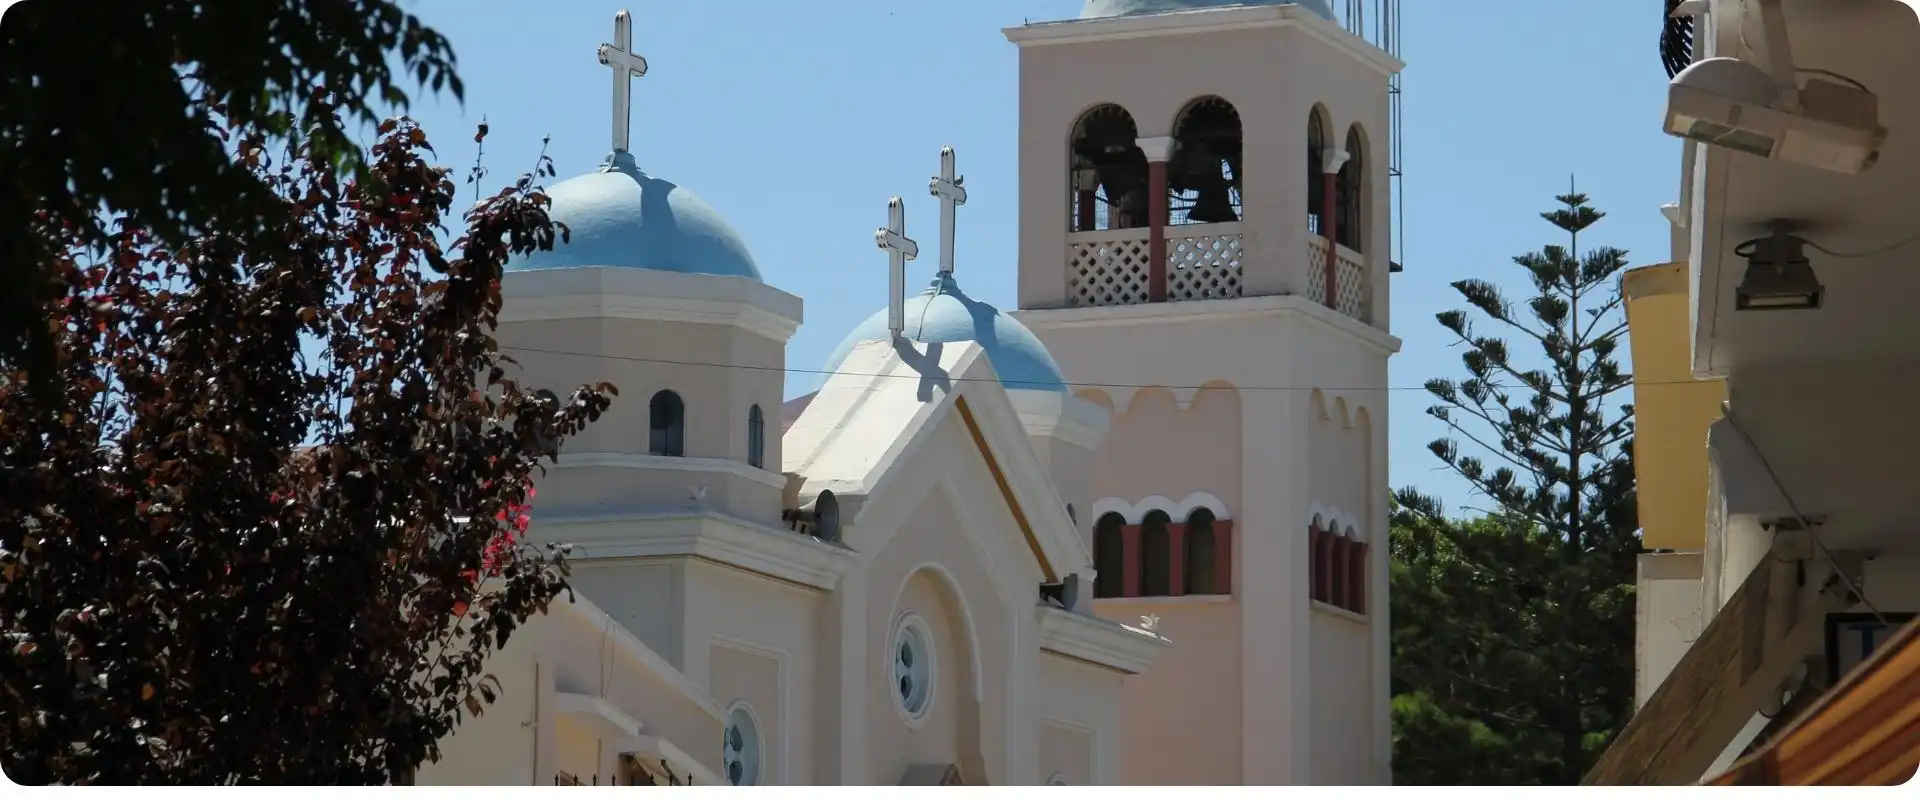 Kos kirke charterrejser til grækenland flyv fra hamborg.webp